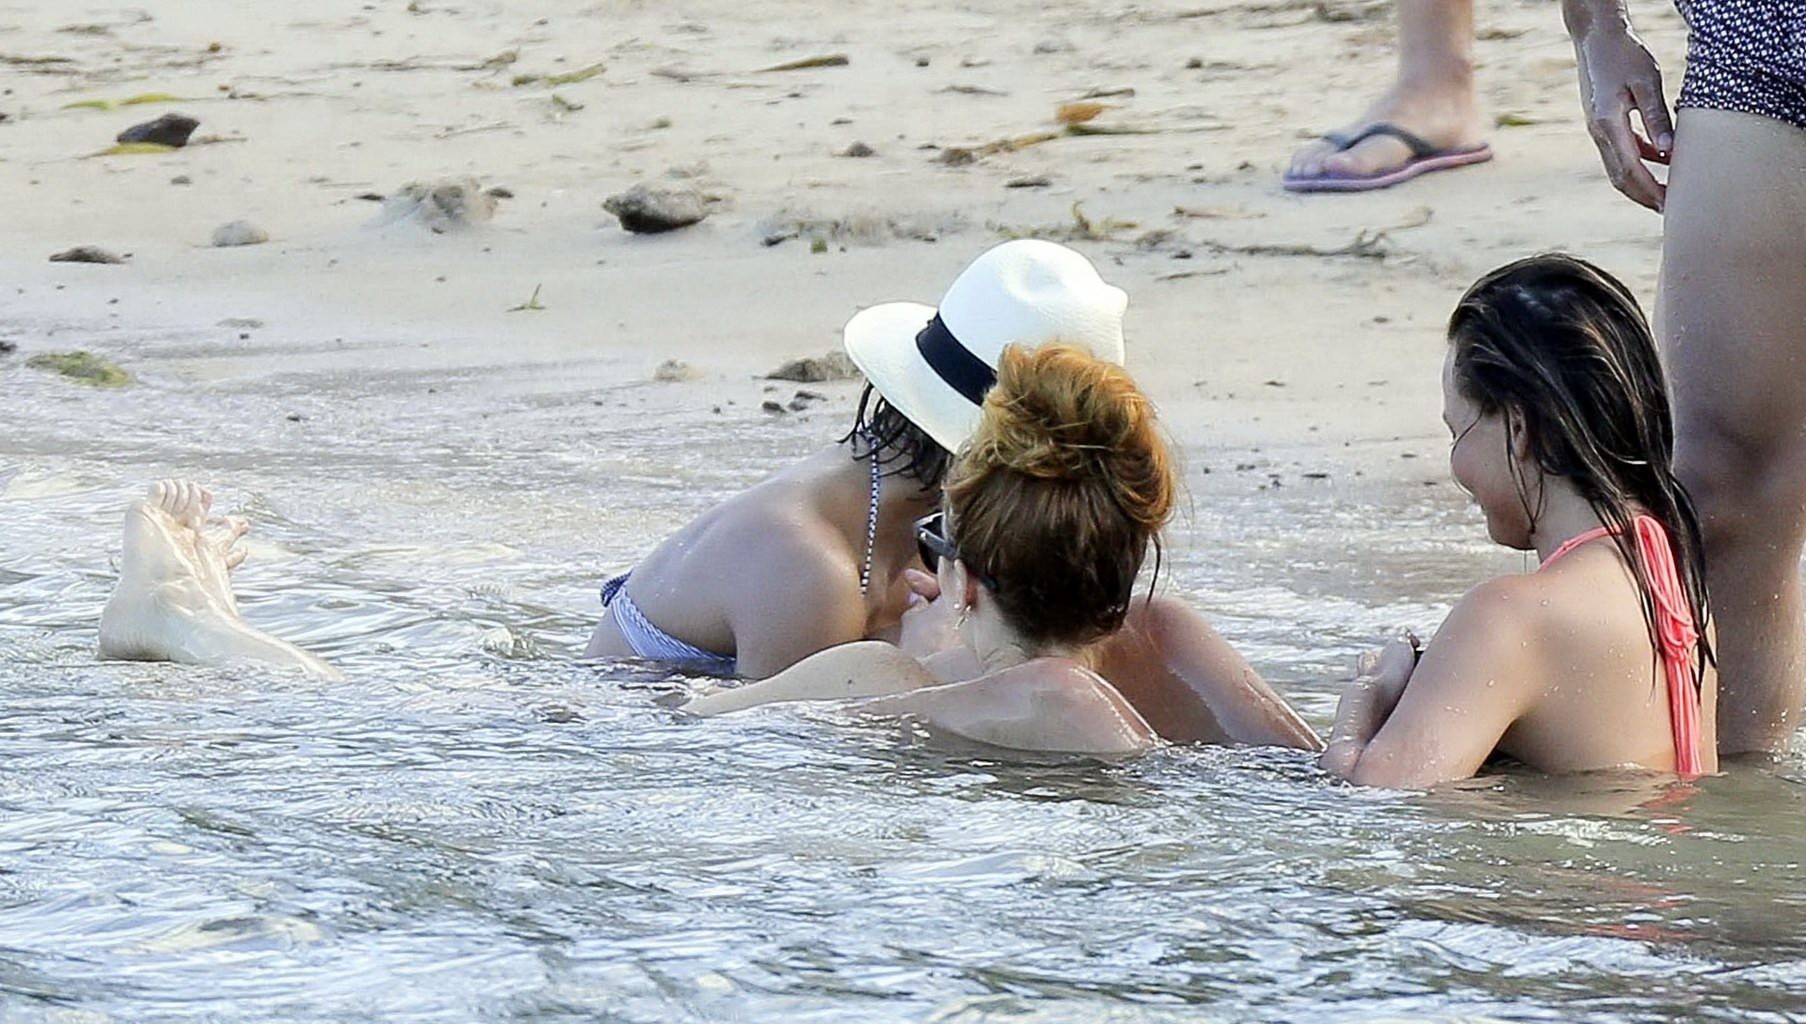 Chrissy Teigen showing off her bikini body in the Caribbean #75169433